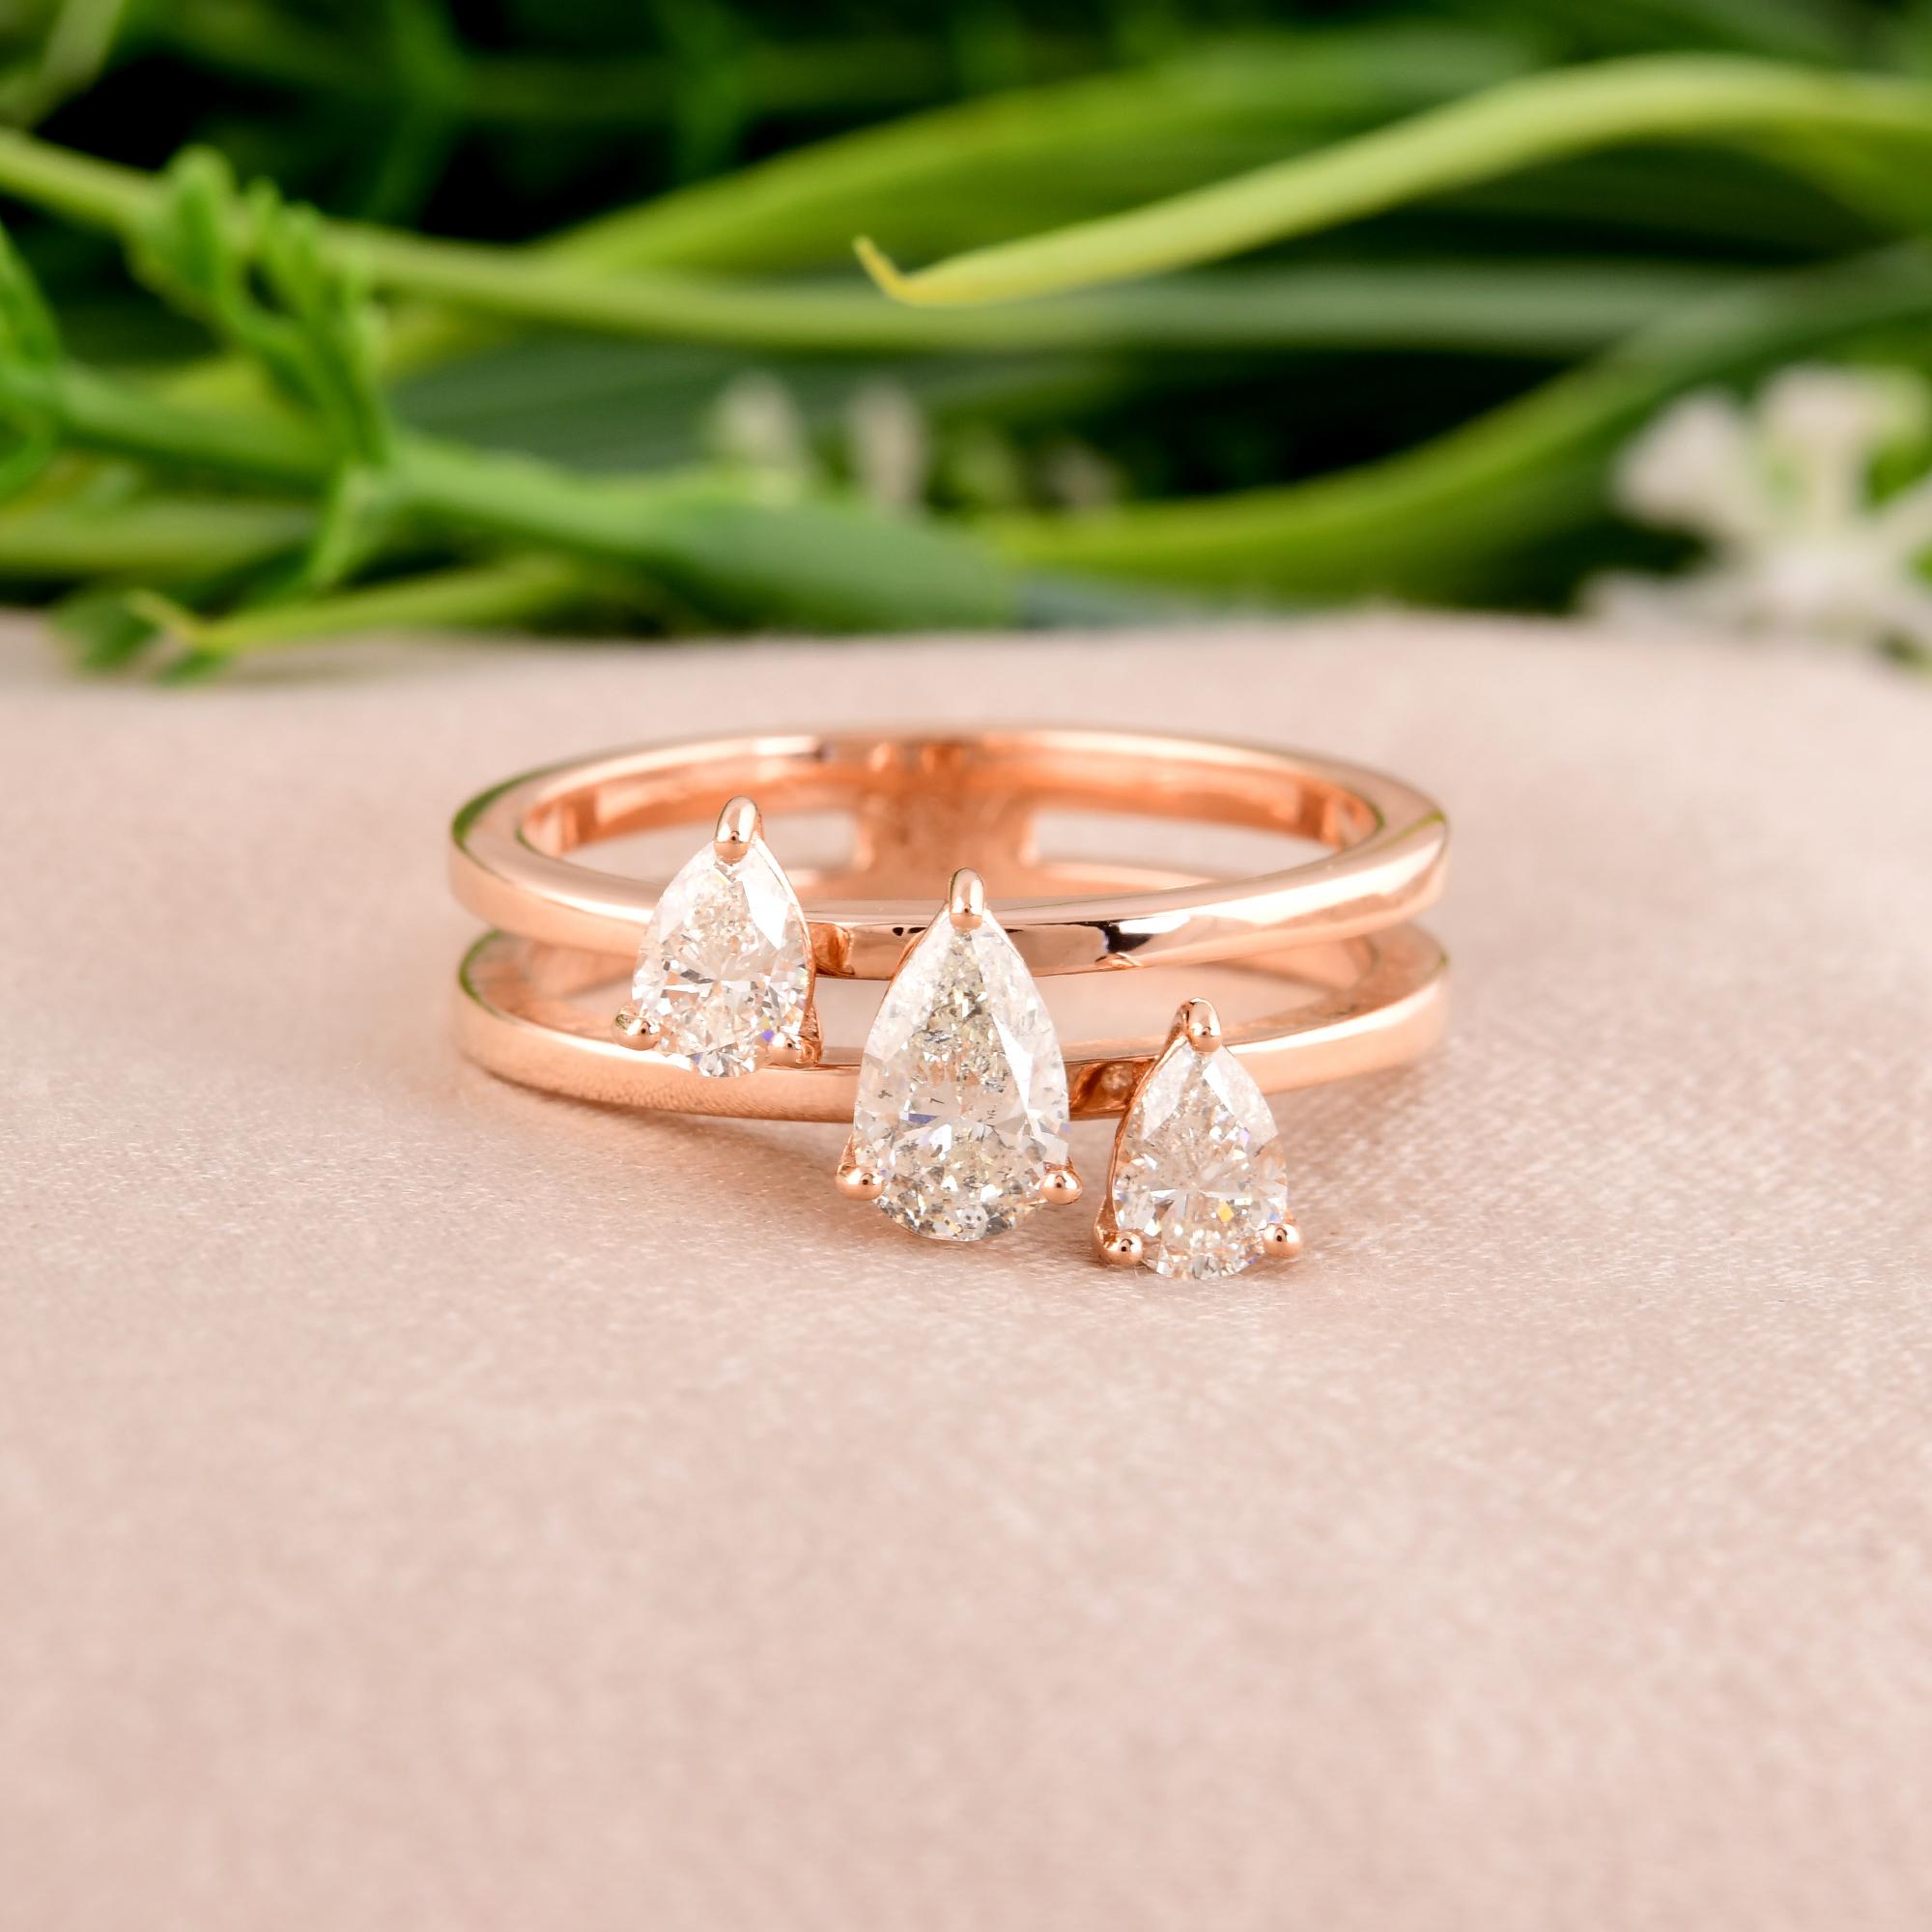 Eingefasst in ein Band aus glänzendem 18-karätigem Roségold, strahlt dieser Ring Wärme und Romantik aus und verleiht jedem Anlass einen Hauch von Glamour. Die Roségoldfassung ergänzt die Brillanz des Diamanten auf wunderbare Weise und schafft ein